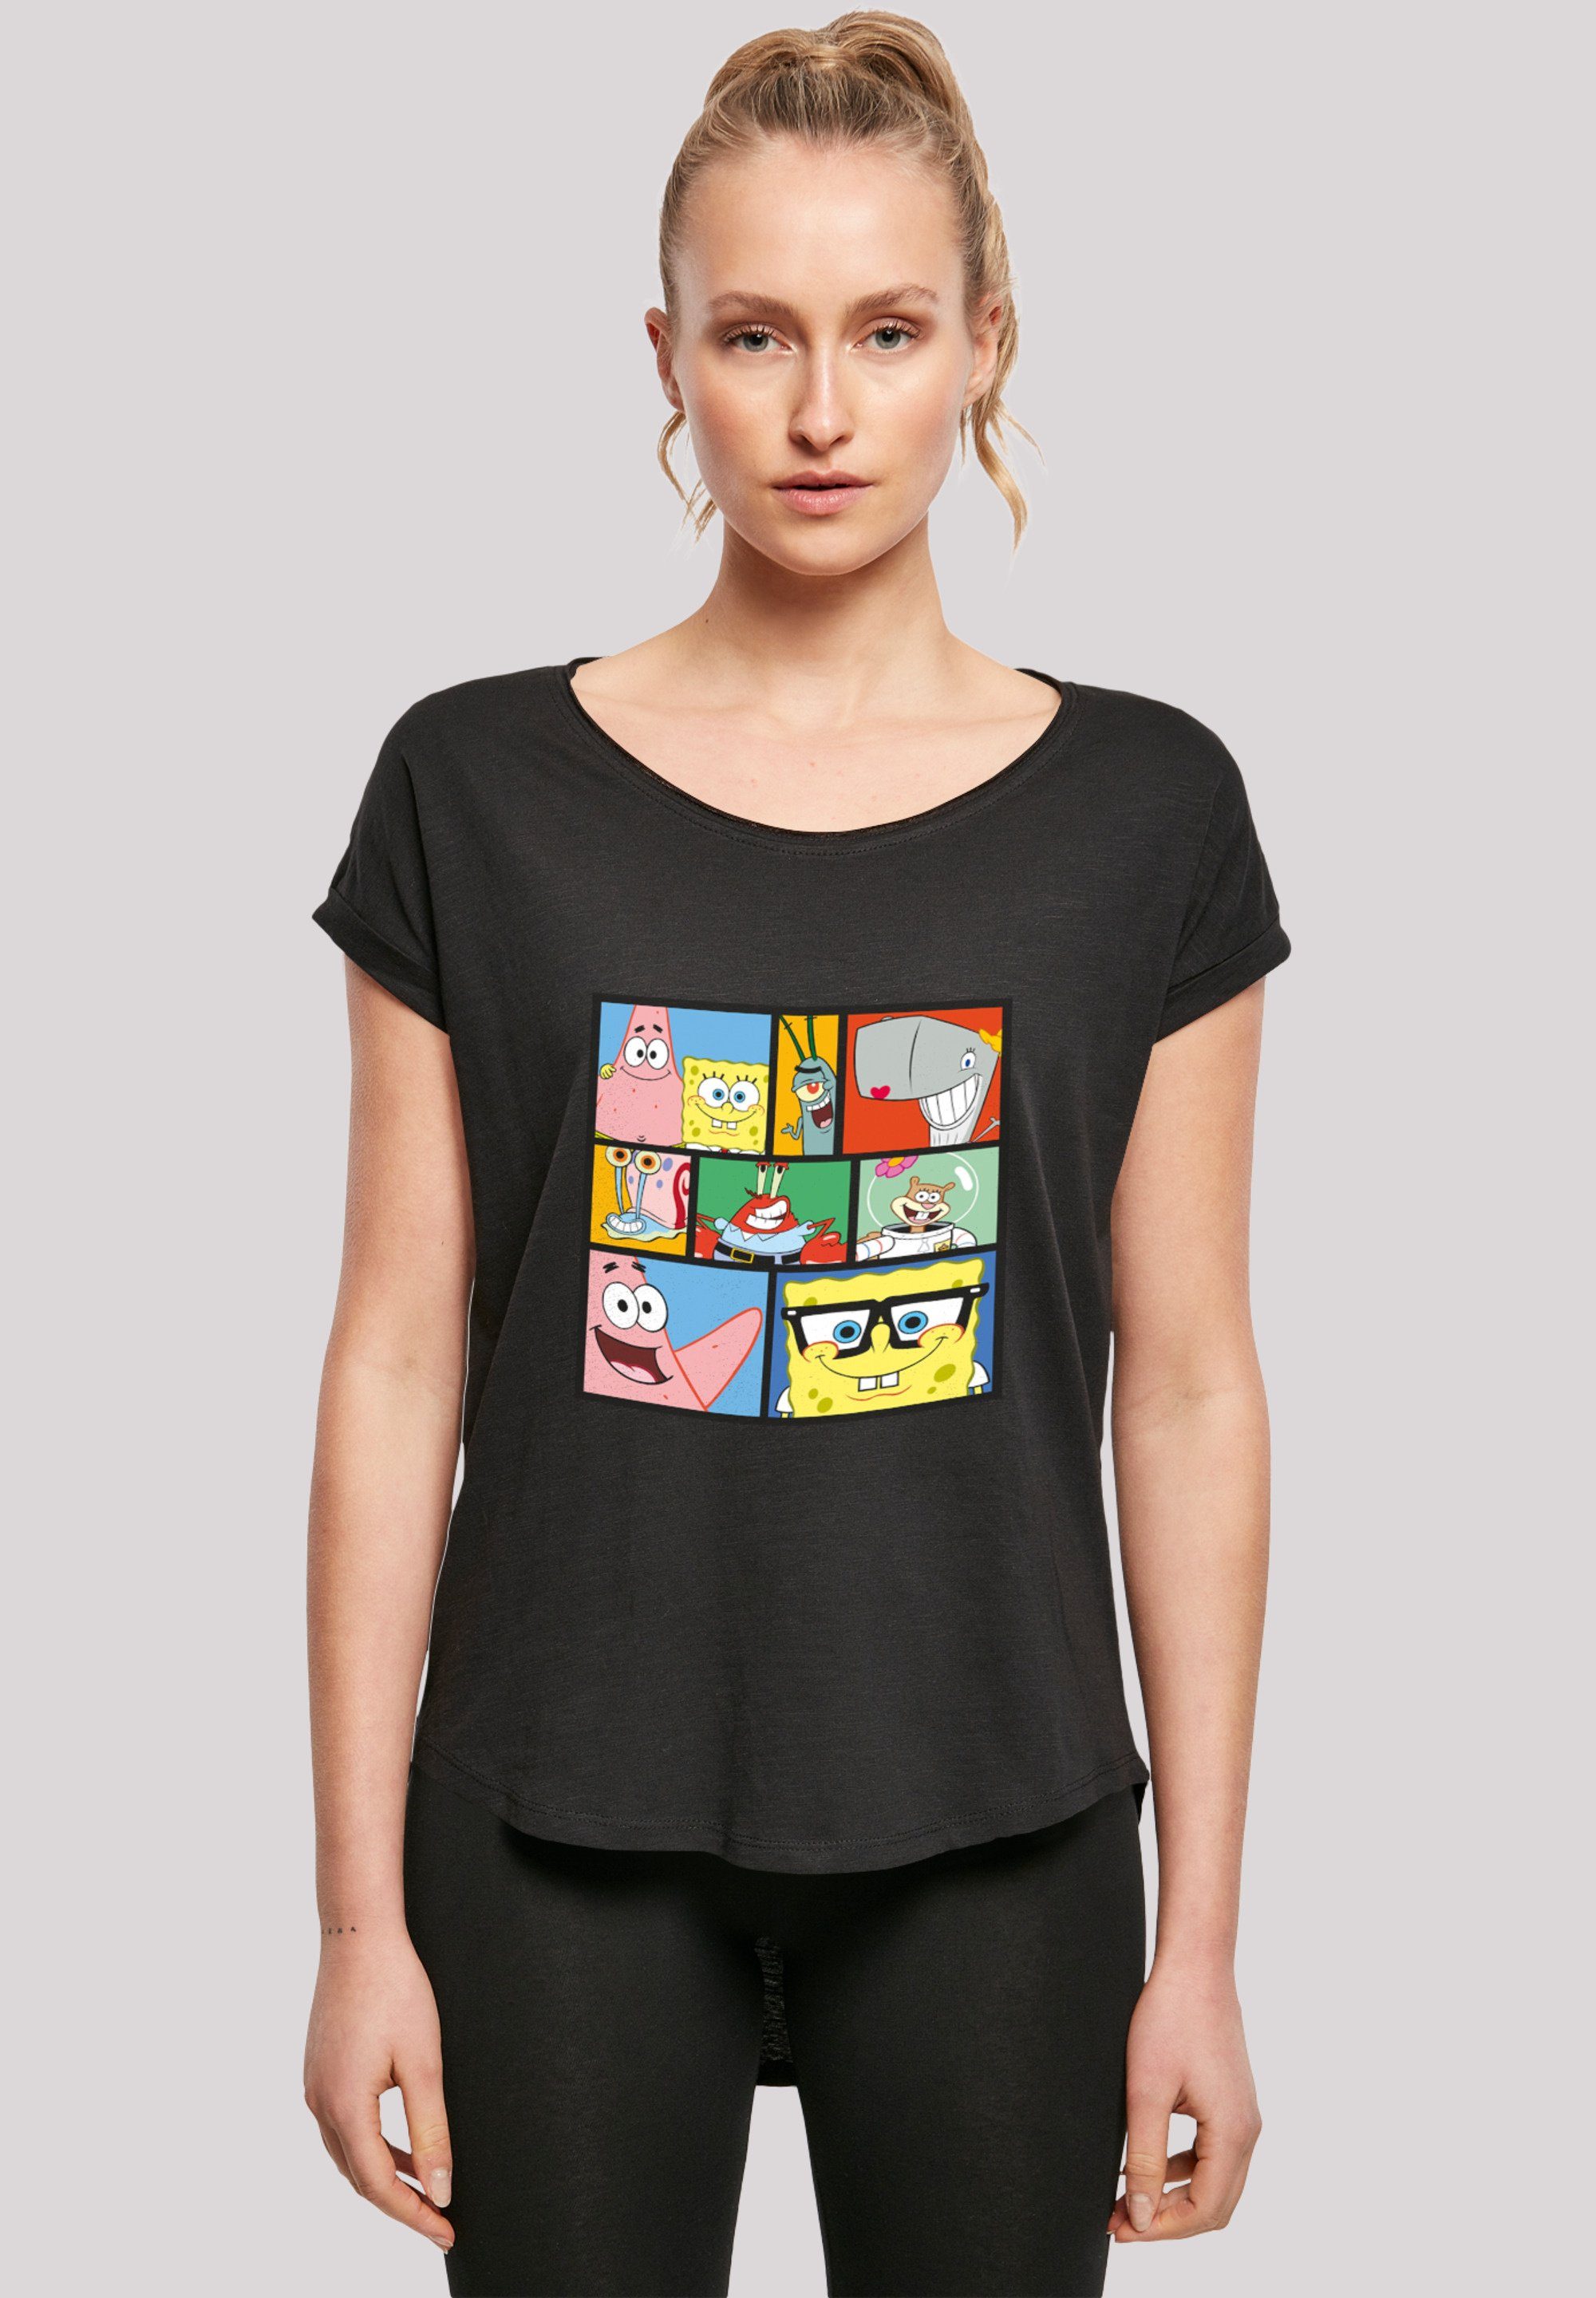 F4NT4STIC T-Shirt 'Spongebob Schwammkopf Collage' Print schwarz